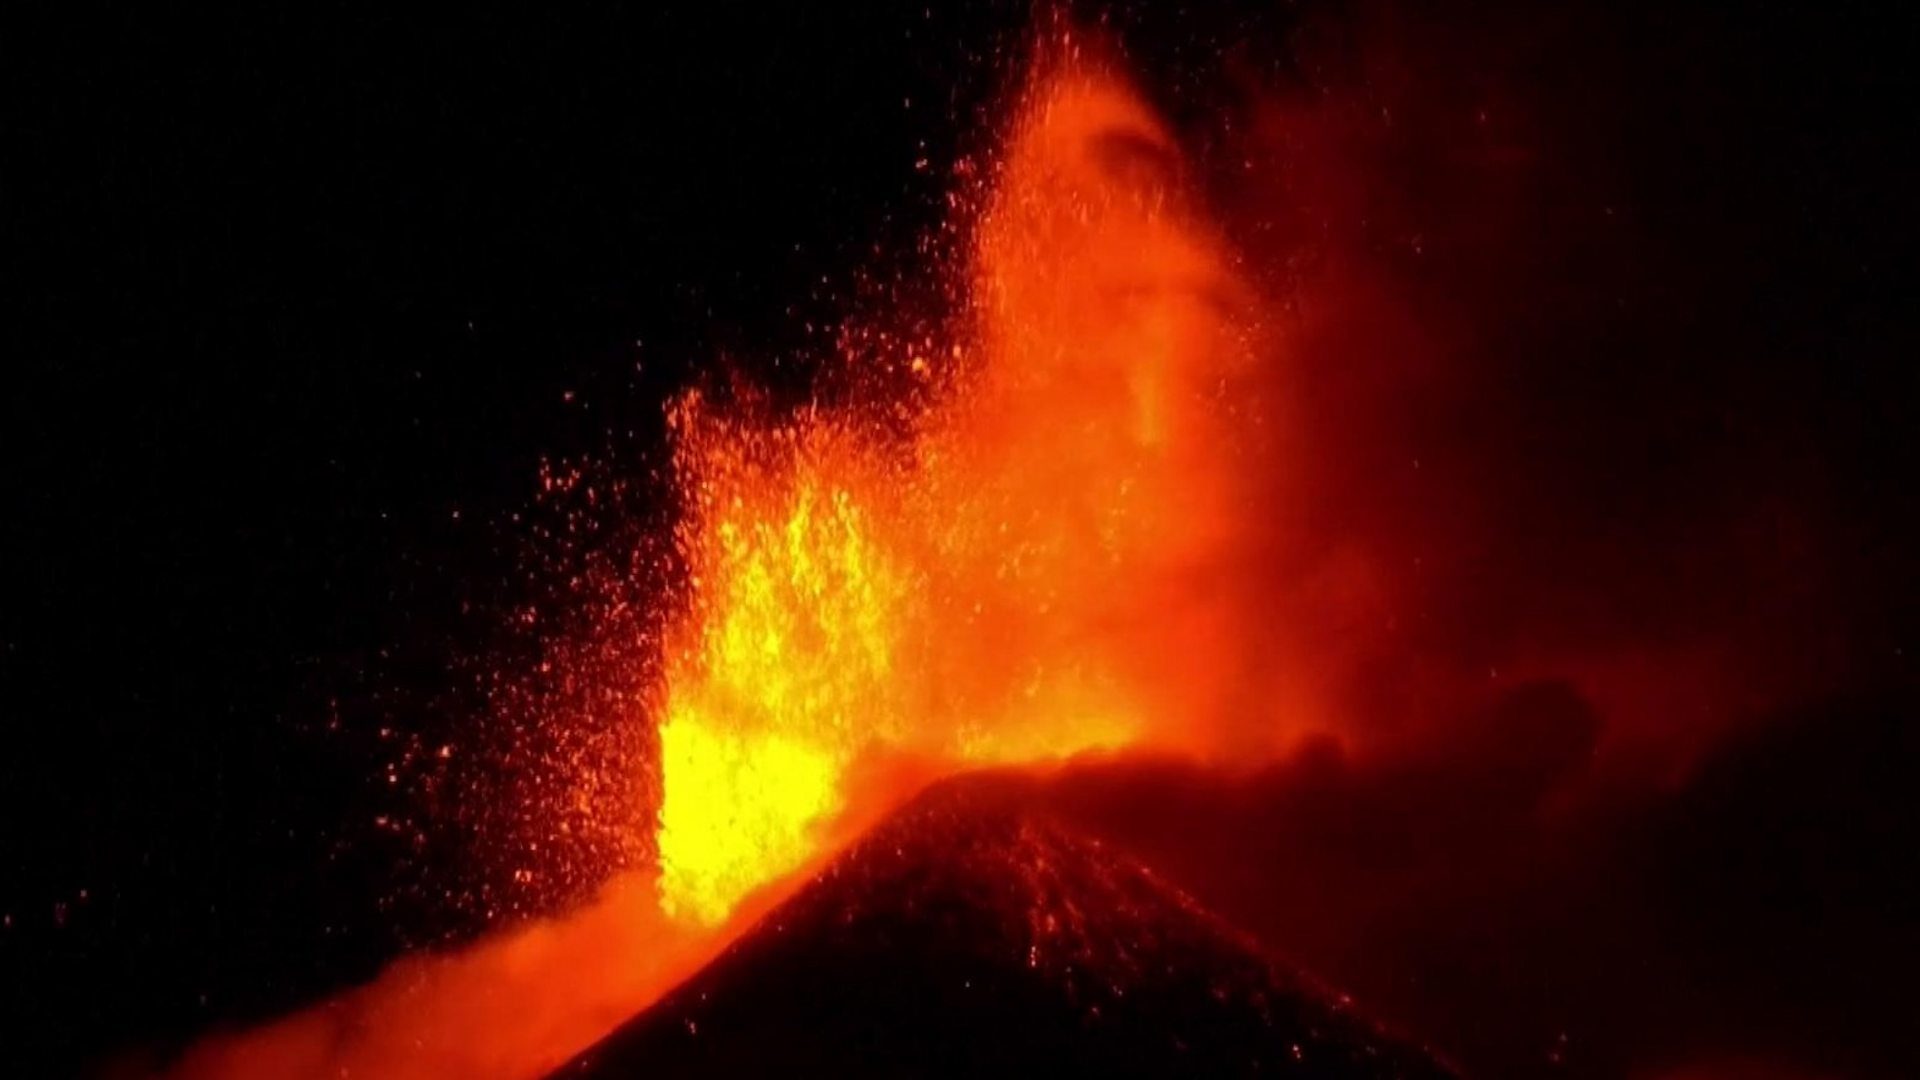 Mount Etna eruption lights up the night sky